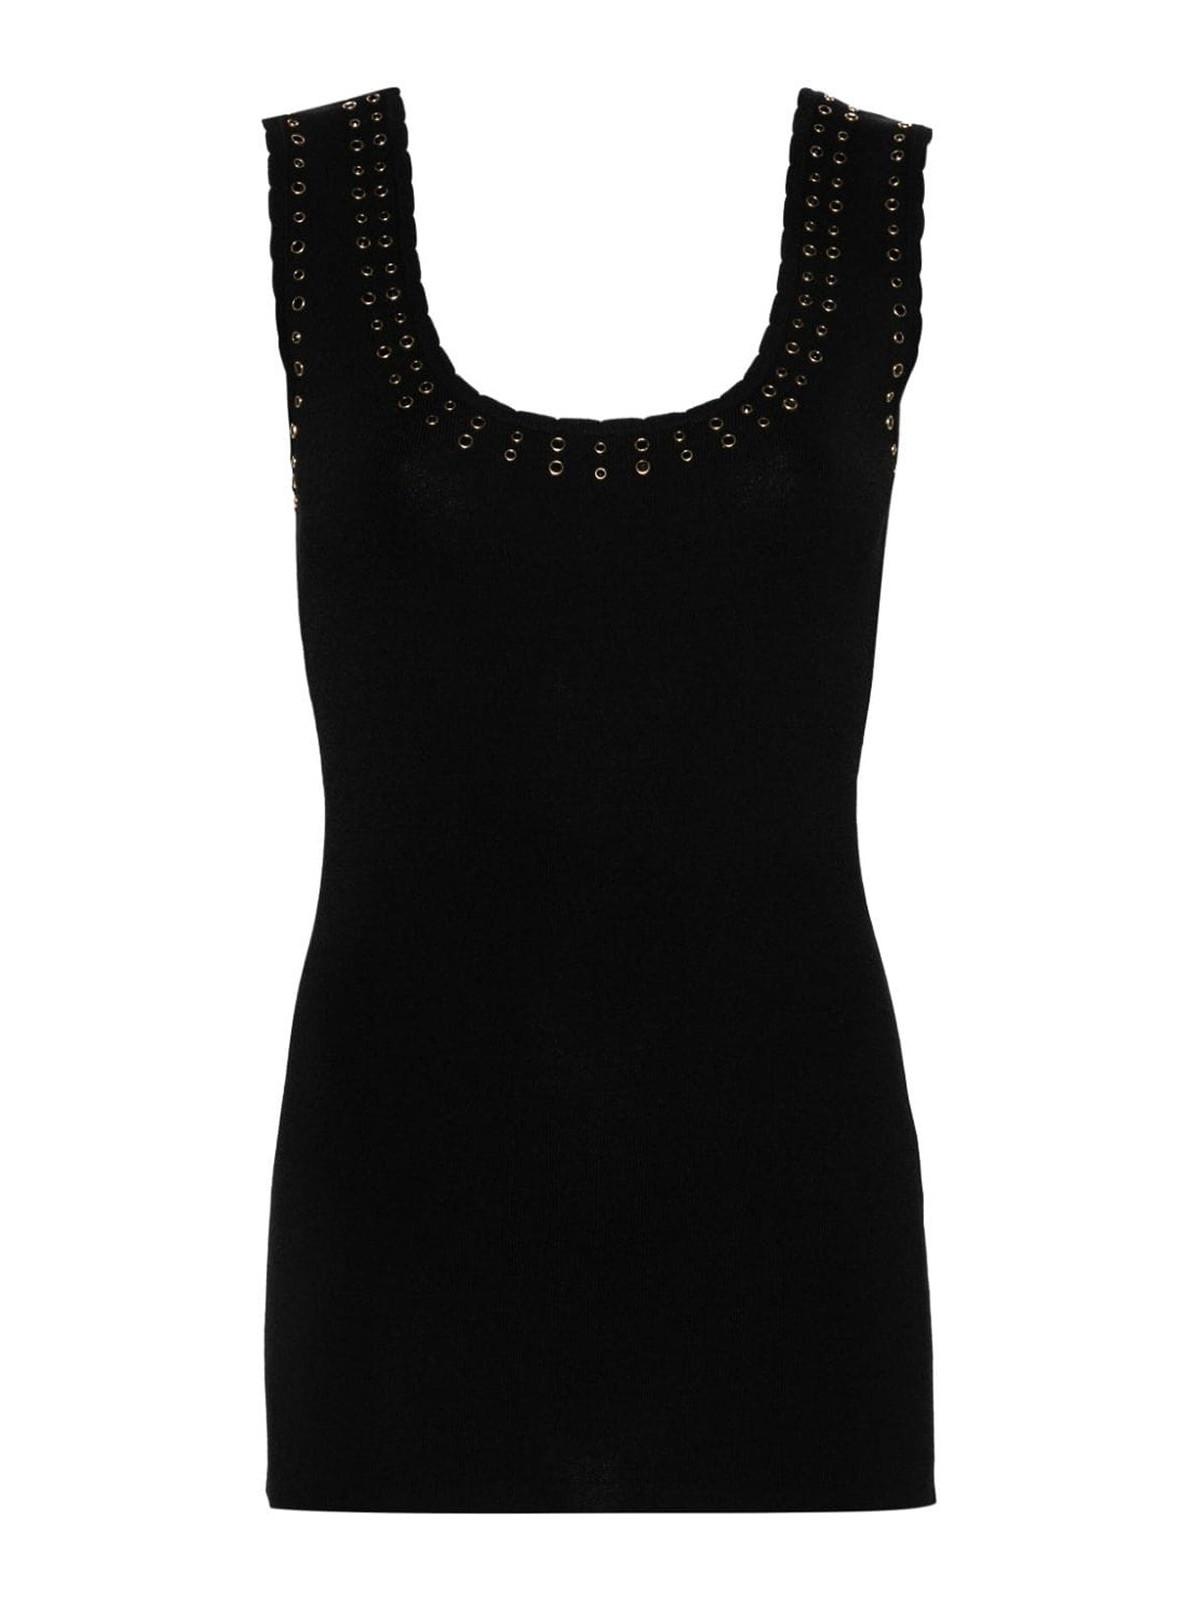 Blugirl Black Knitted Embellished Top